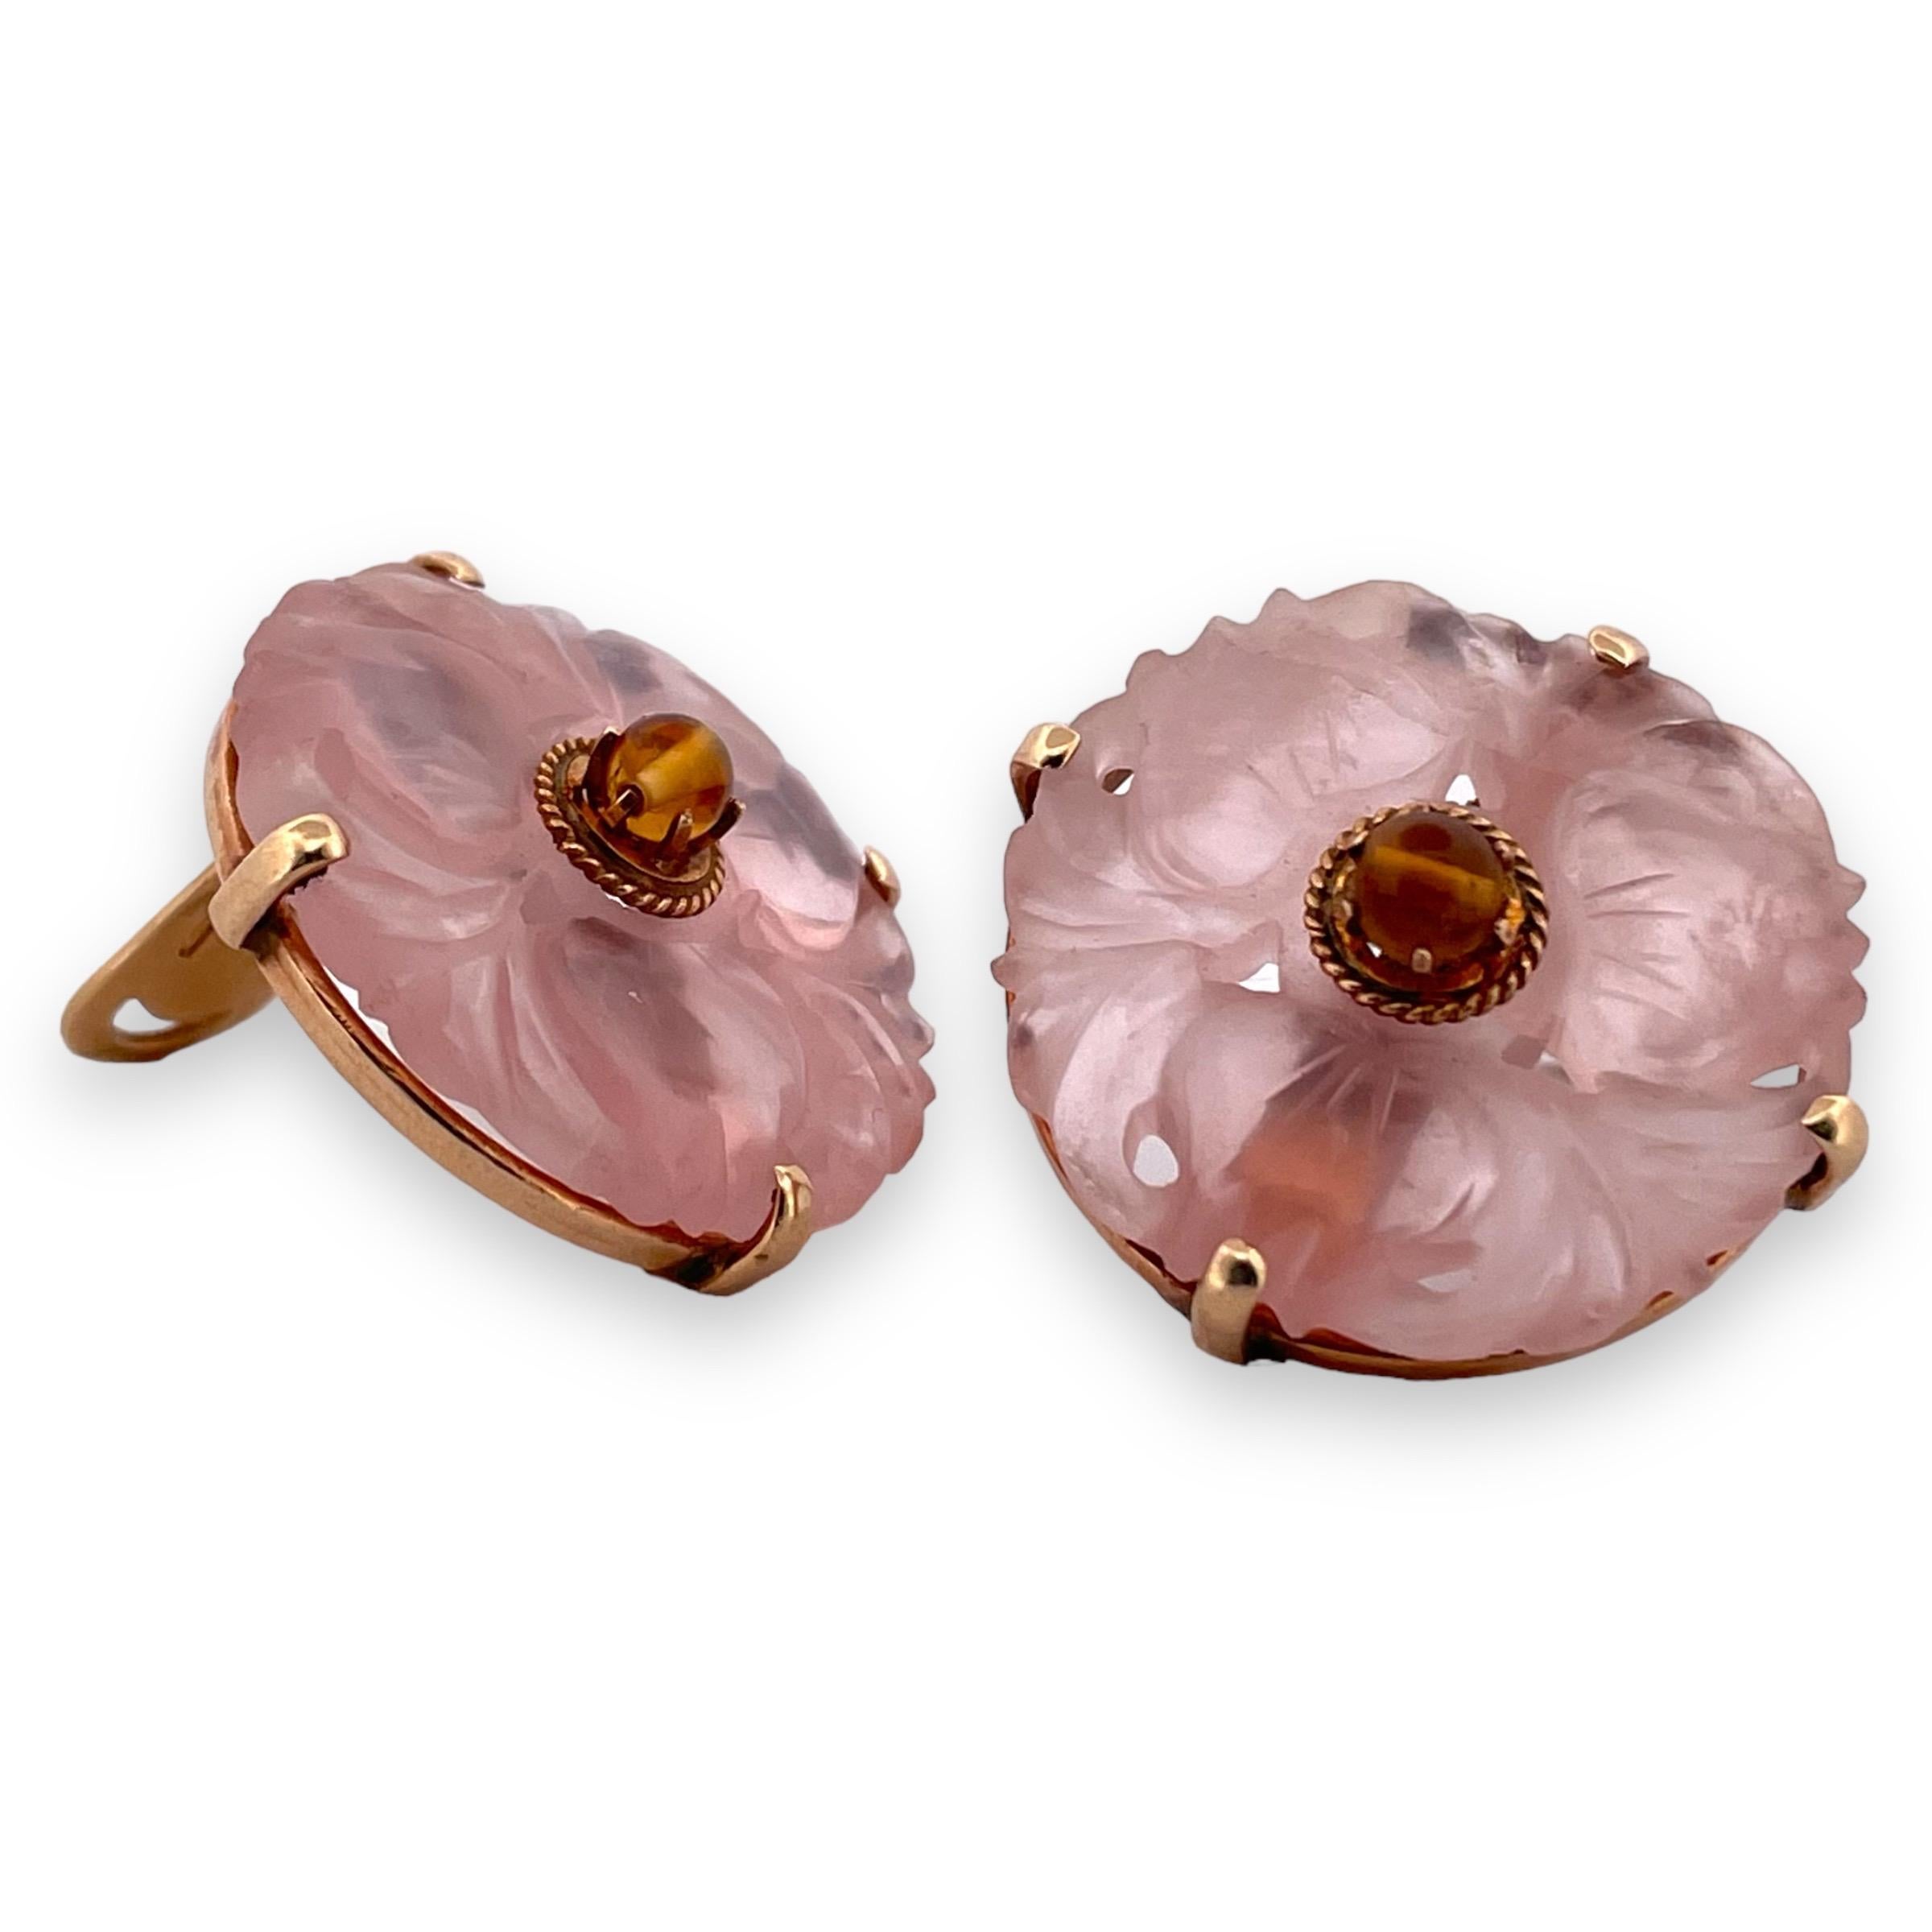 Entdecken Sie die bezaubernde Schönheit dieser runden Ohrclips mit zartem Rosenquarz, eingefasst in poliertes 14-karätiges Gelbgold. Diese Ohrringe bieten einen Hauch von sanftem, femininem Charme mit ihren warmen Blush-Tönen, die sie zu einer